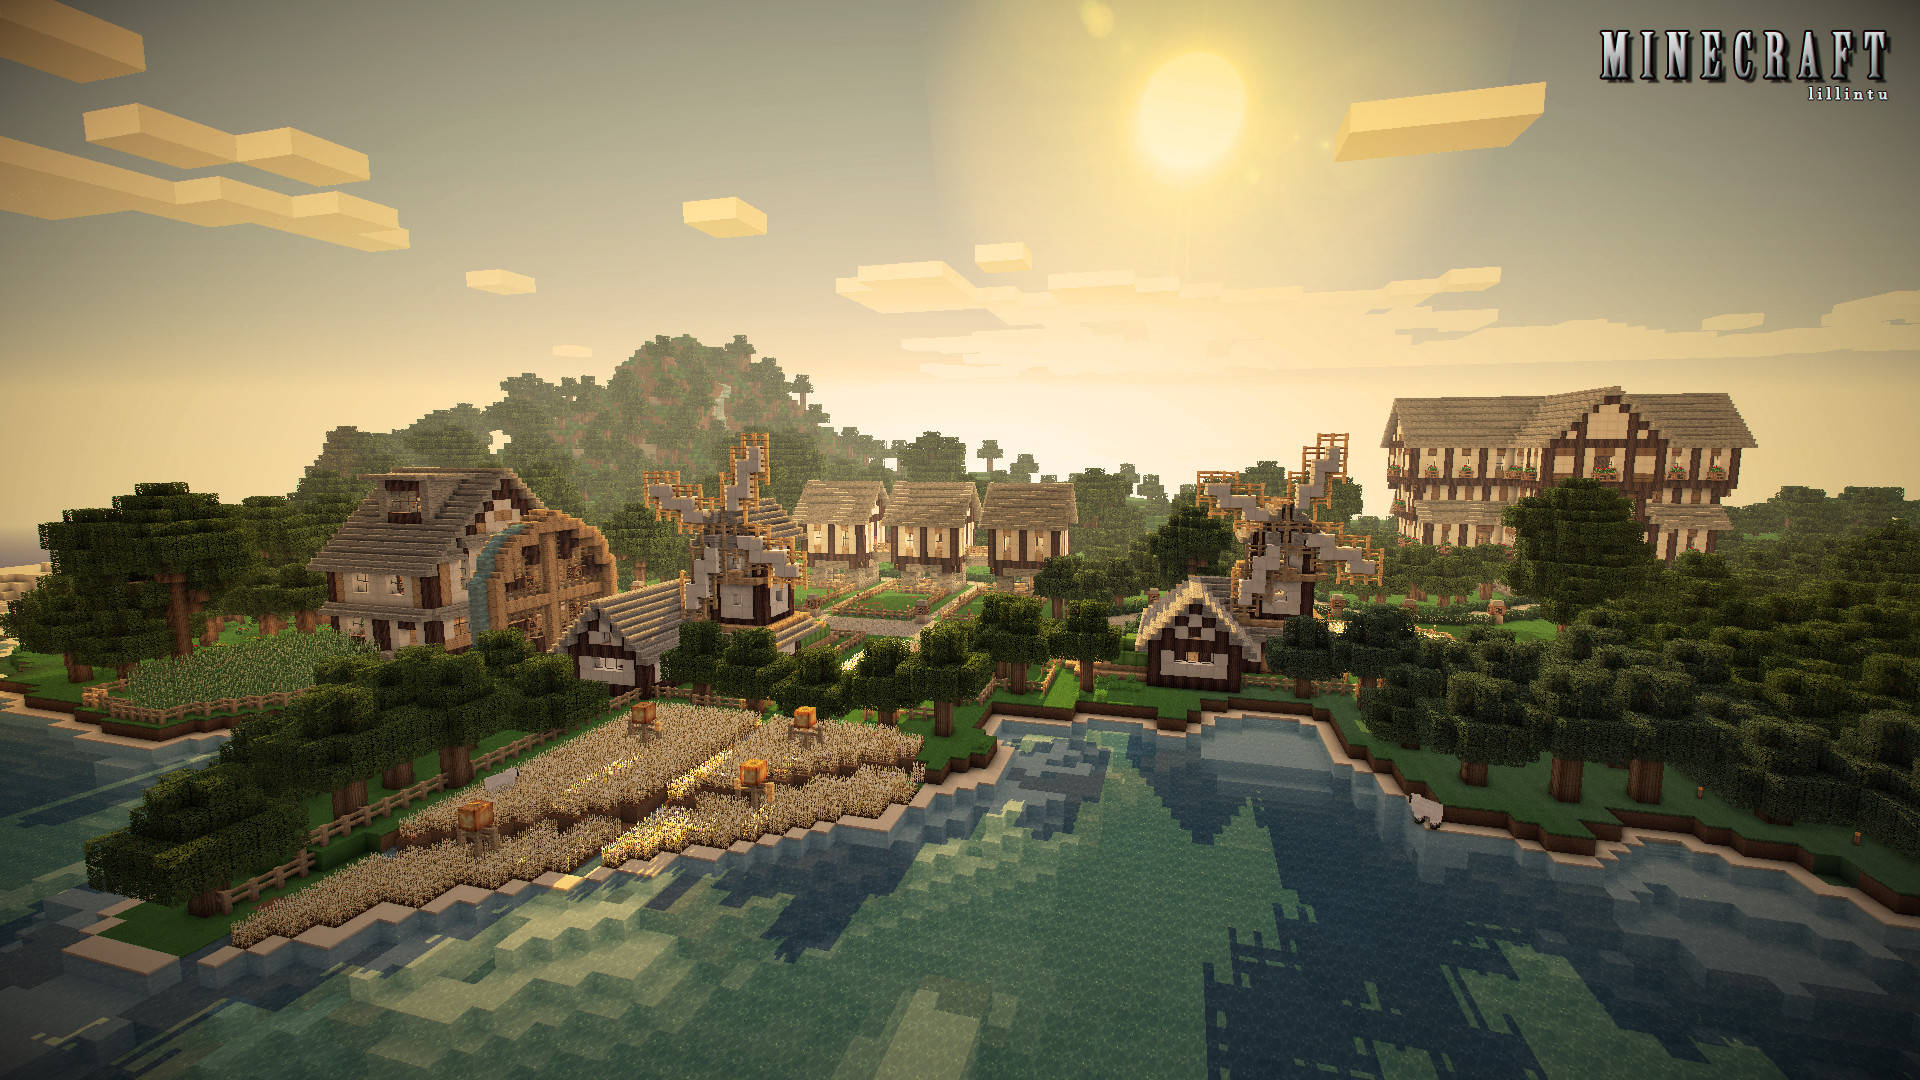 Birch Wood Mansion And Village Minecraft Hd